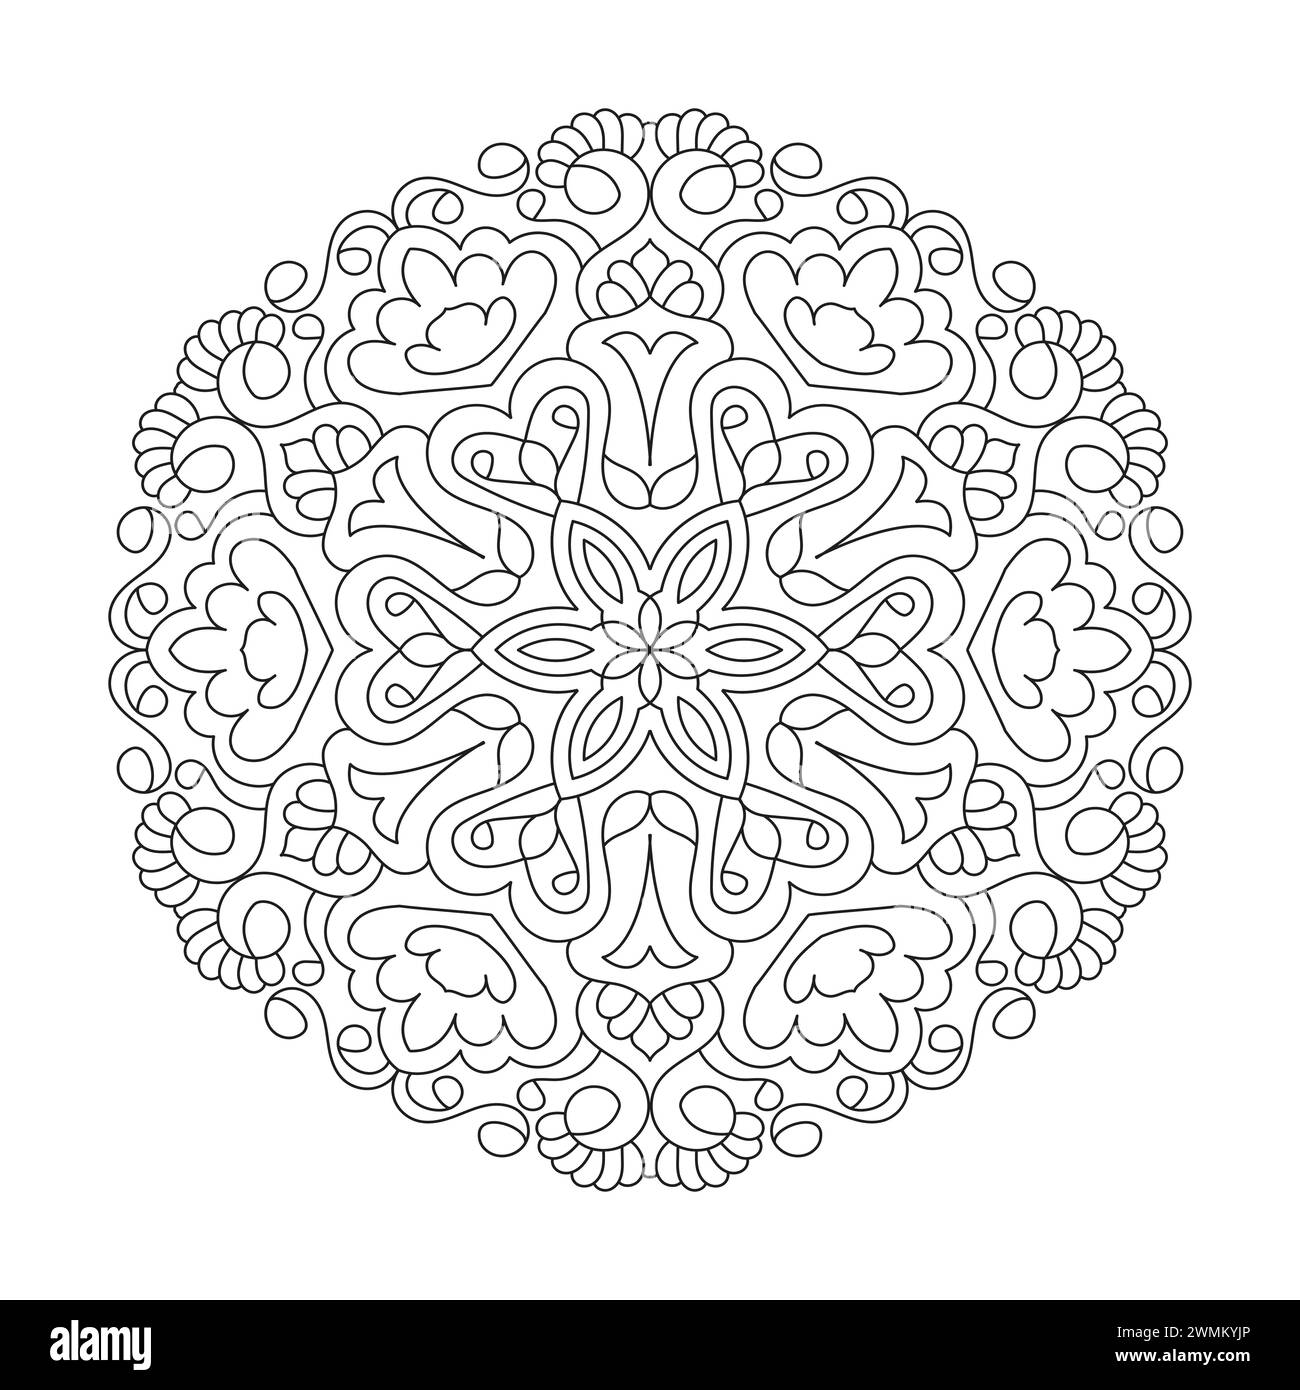 Simplicity friedliches Mandala Malbuch Seite für kdp Book Interior. Friedliche Blütenblätter, Fähigkeit zum Entspannen, Gehirnerlebnisse, harmonischer Hafen, friedlich Stock Vektor